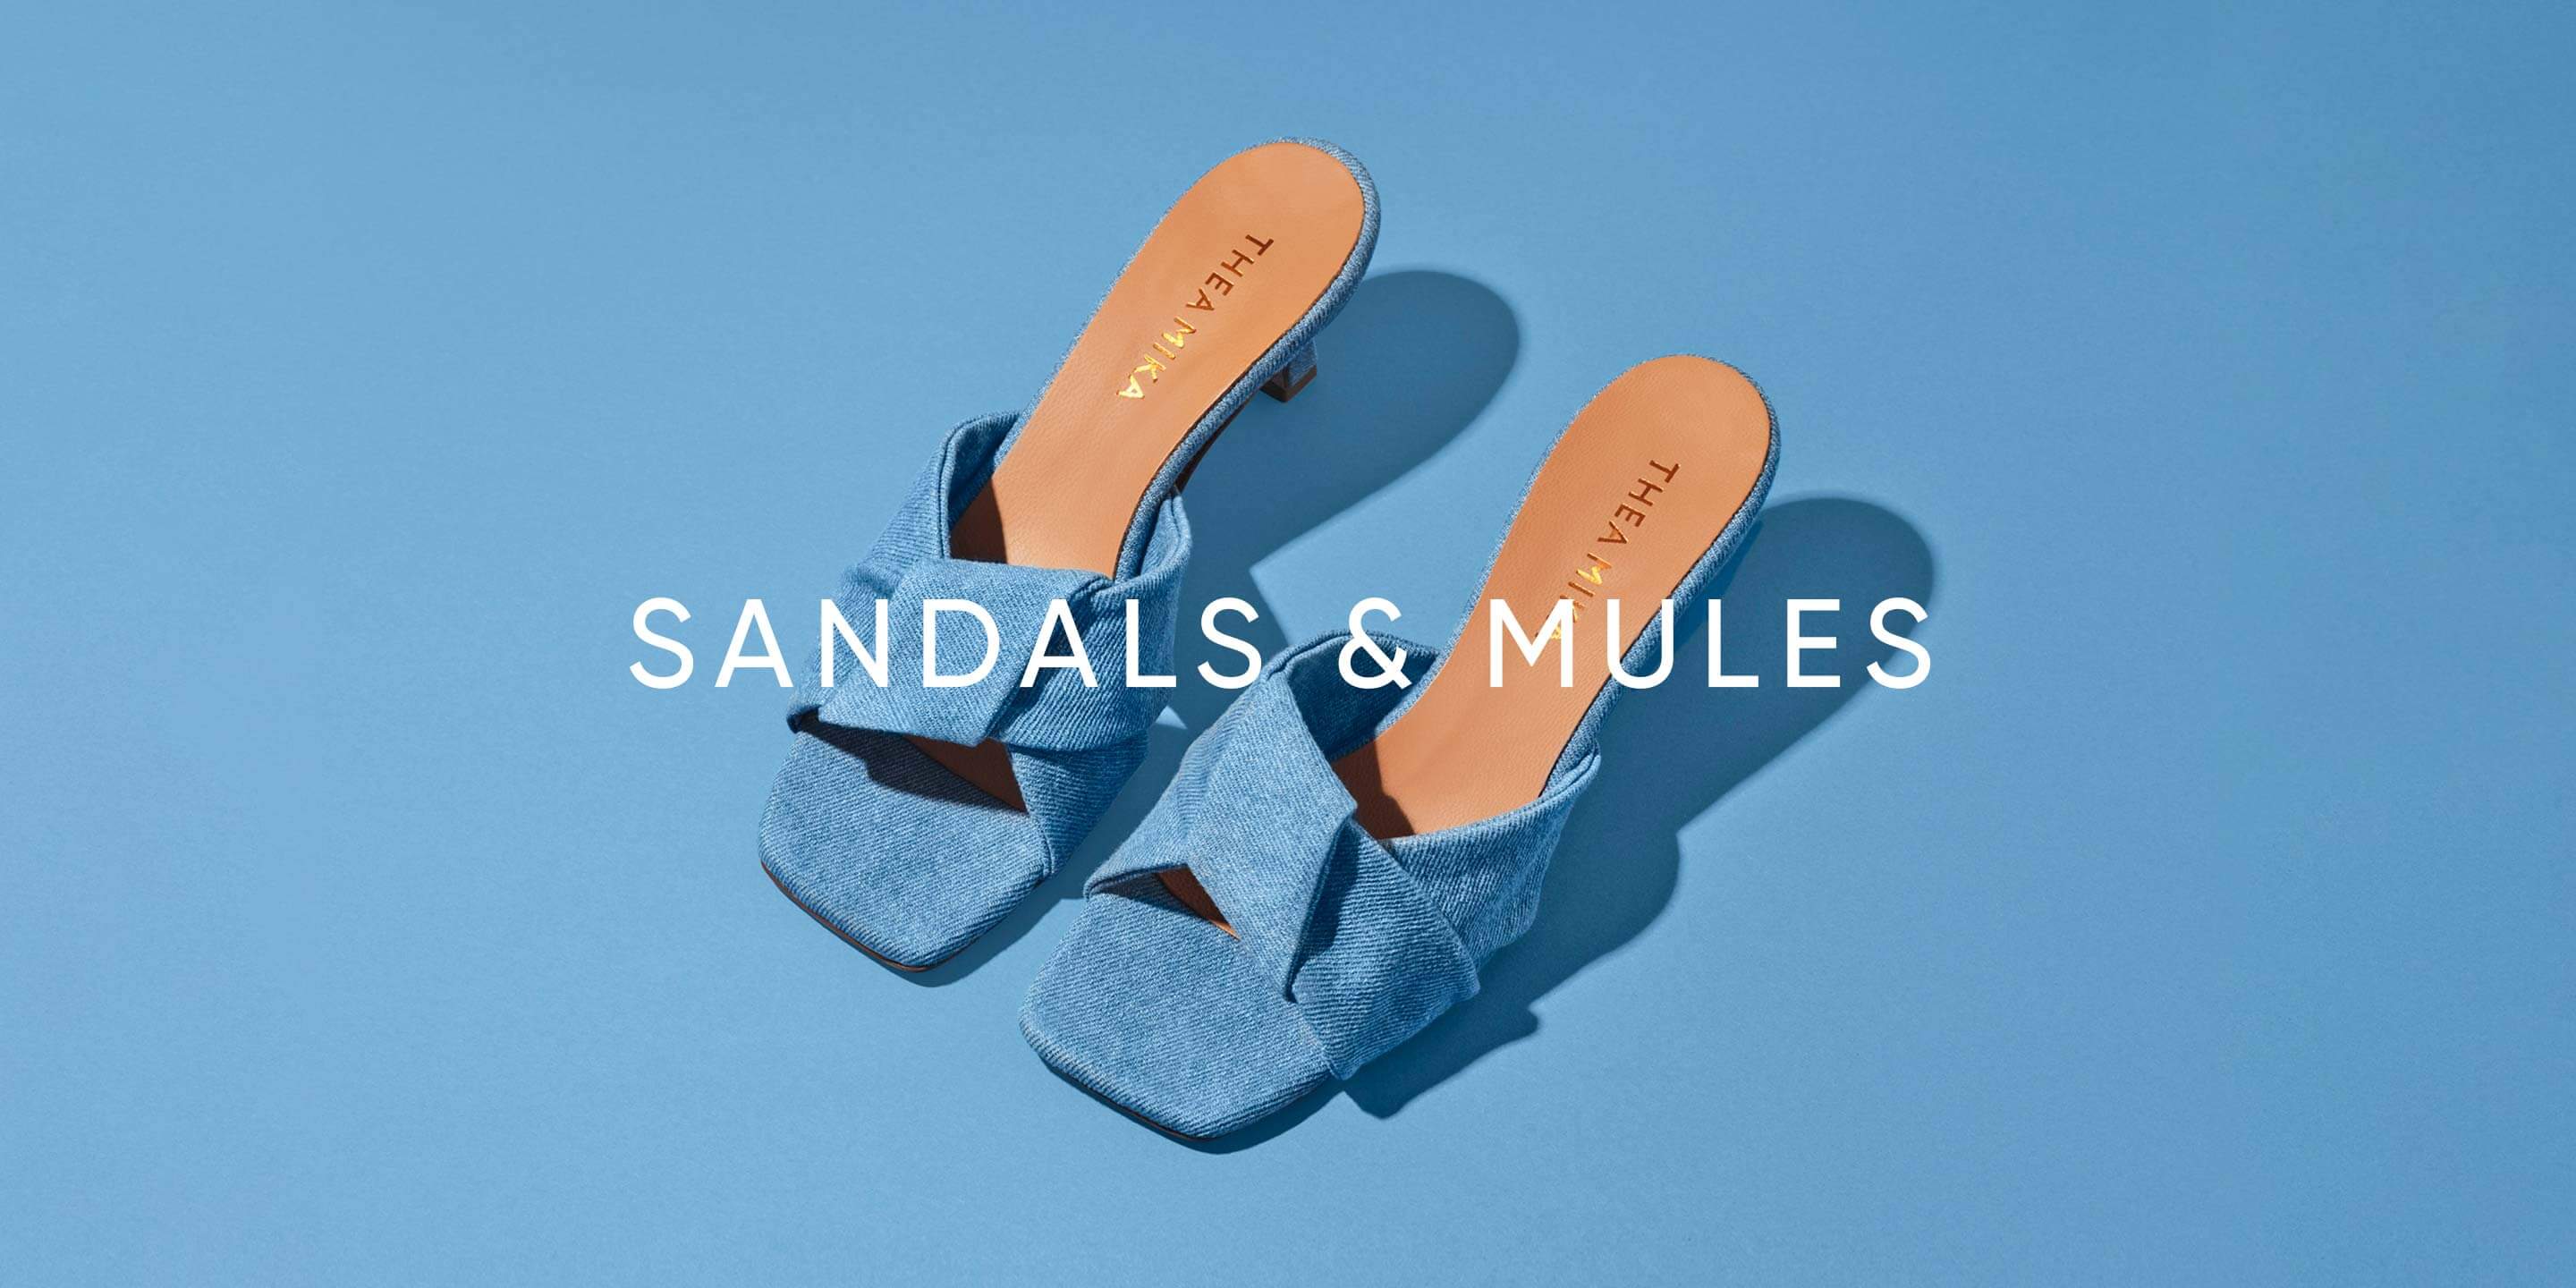 Sandals & mules